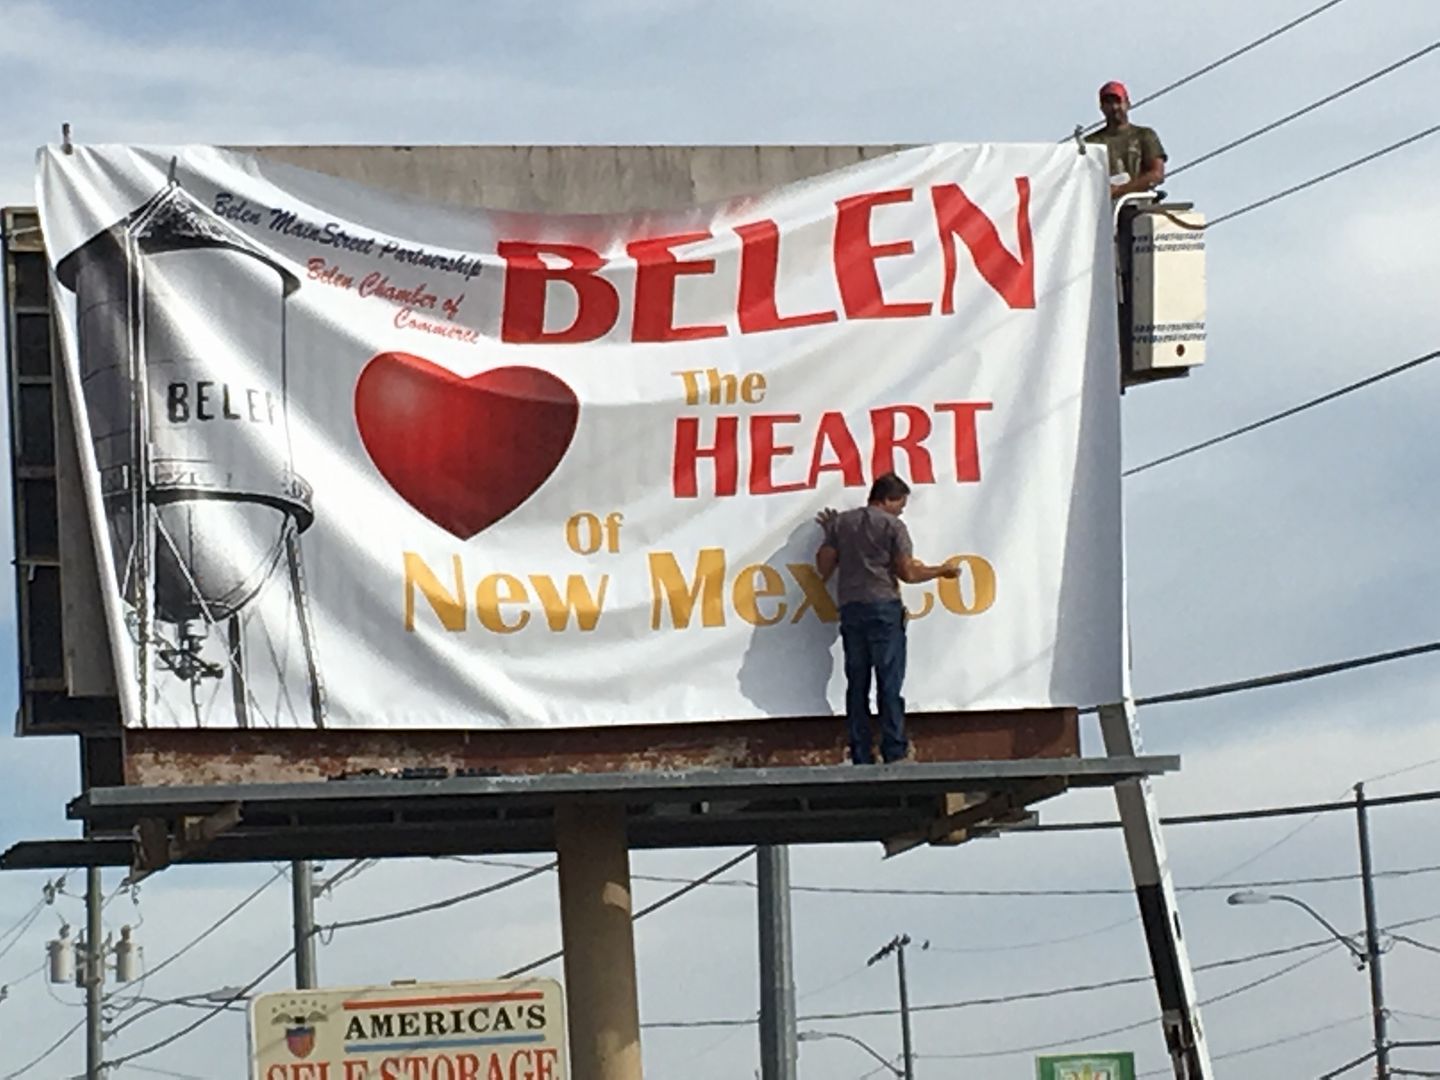 Robert putting up the 'Heart of Belen' sign